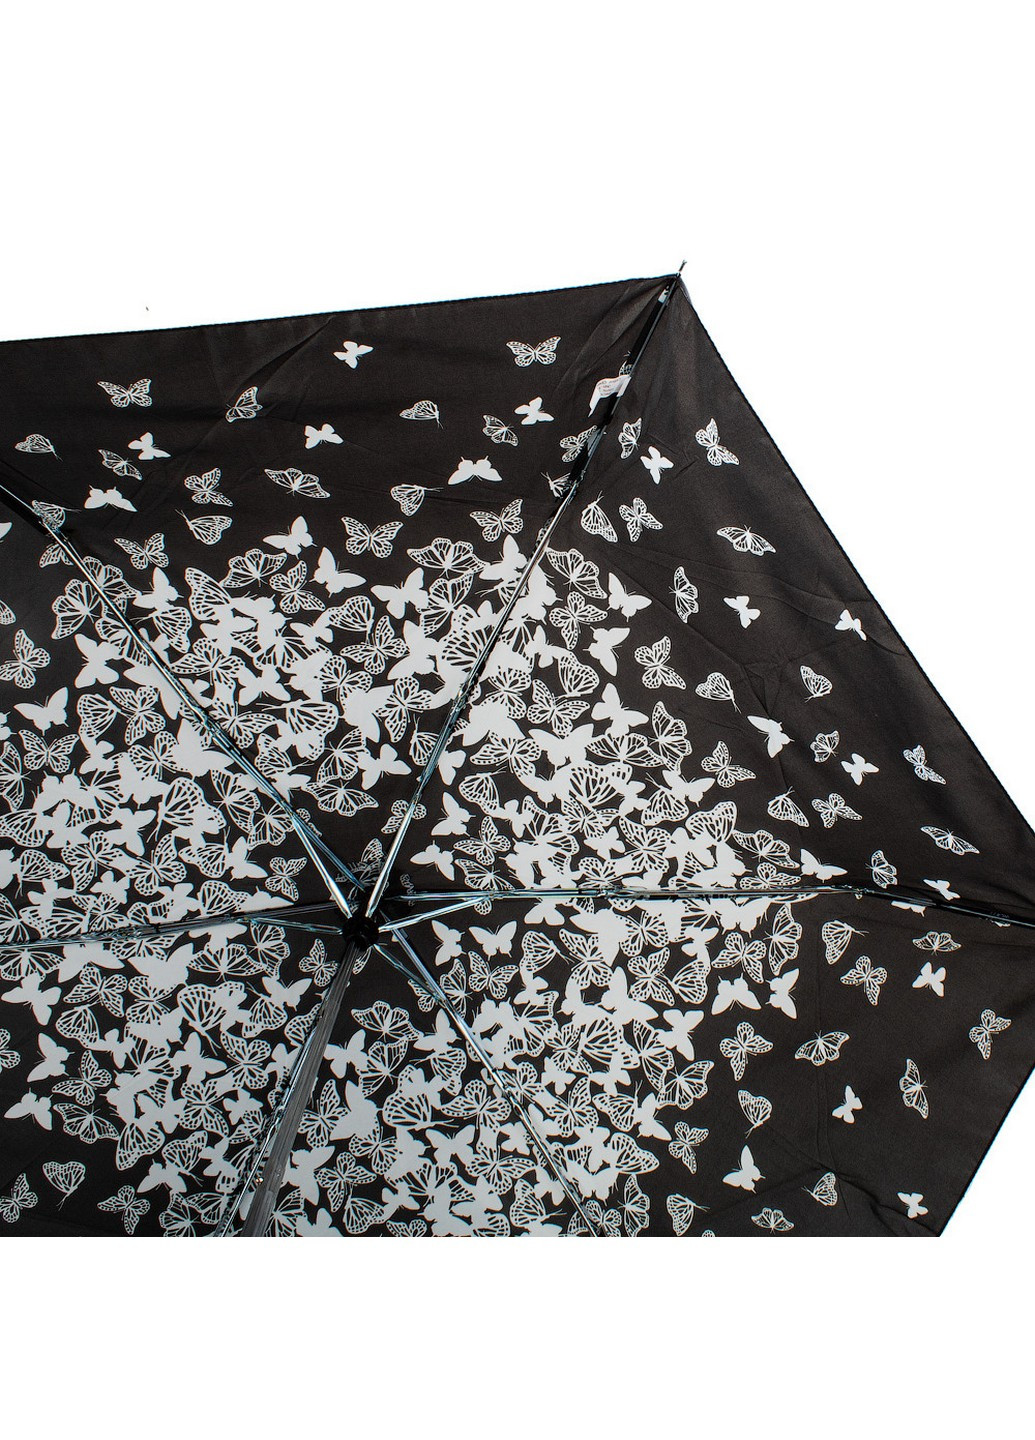 Жіночий складний парасольку механічний 91 см Incognito (206212401)